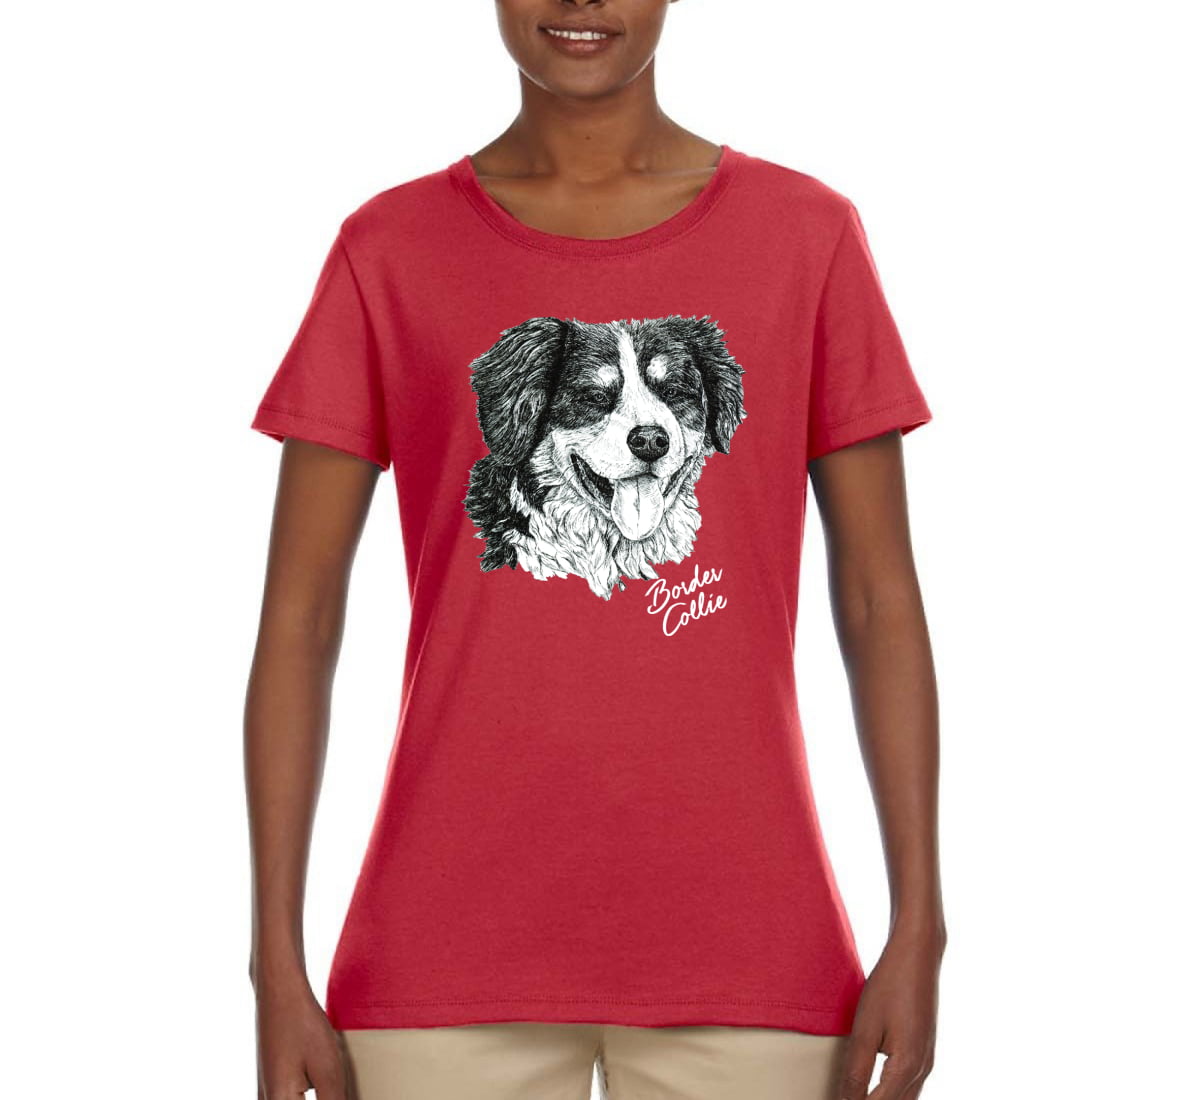 Ladies 2 Paw Prints Tshirt Funny Crazy Dog Clothing Labrador Staff Dachshund